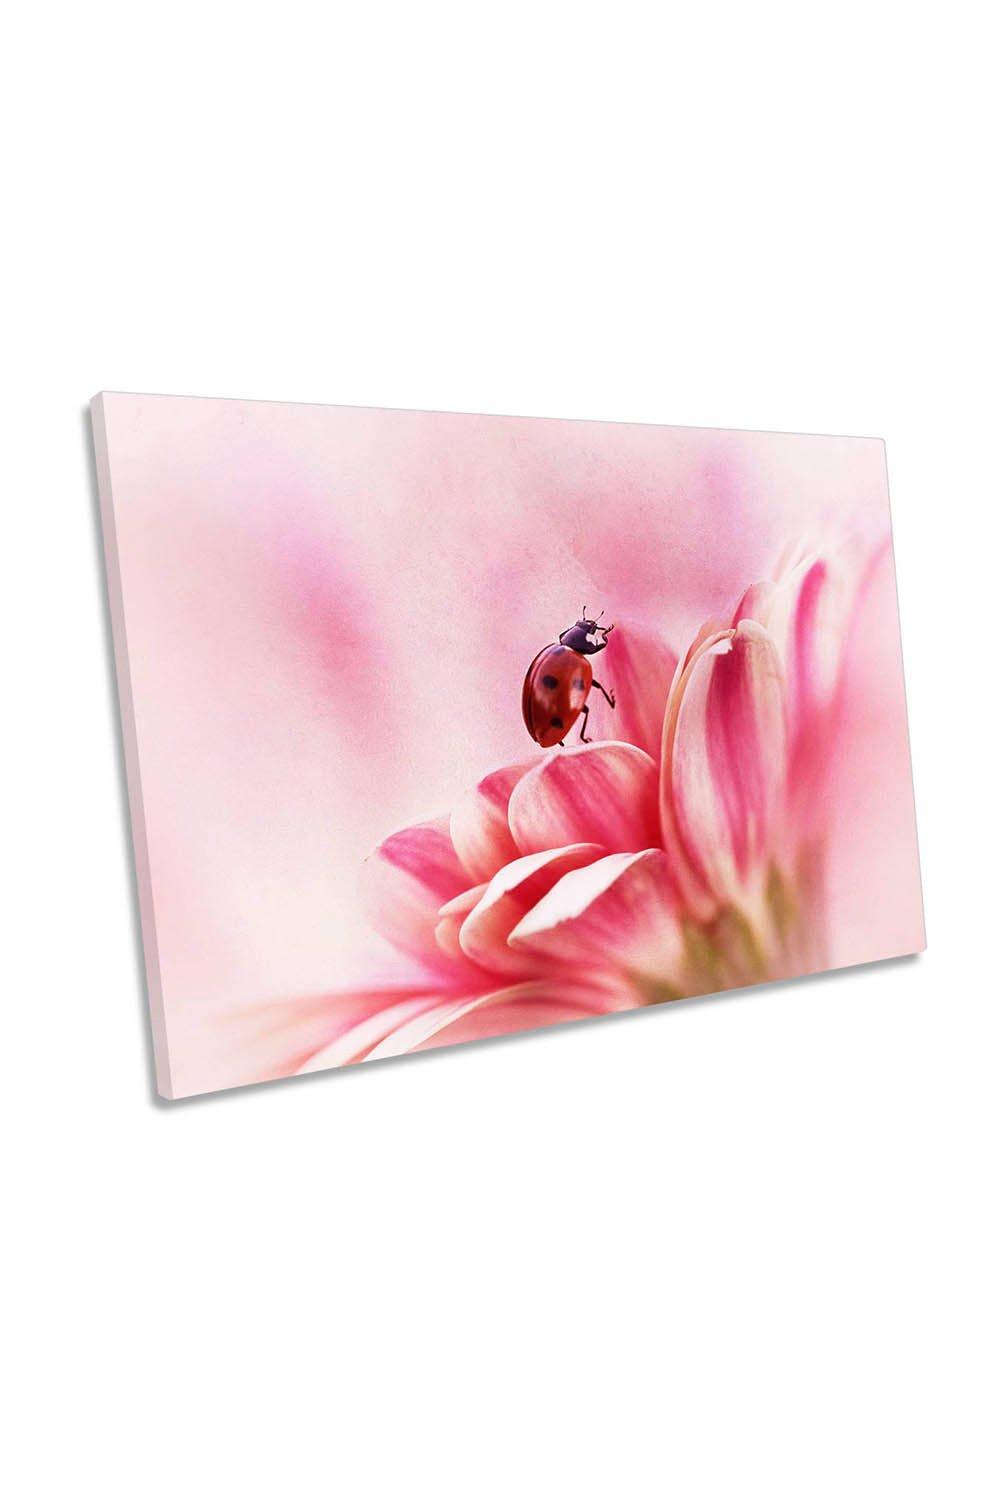 Pink Gerbera Flower Ladybird Floral Canvas Wall Art Picture Print